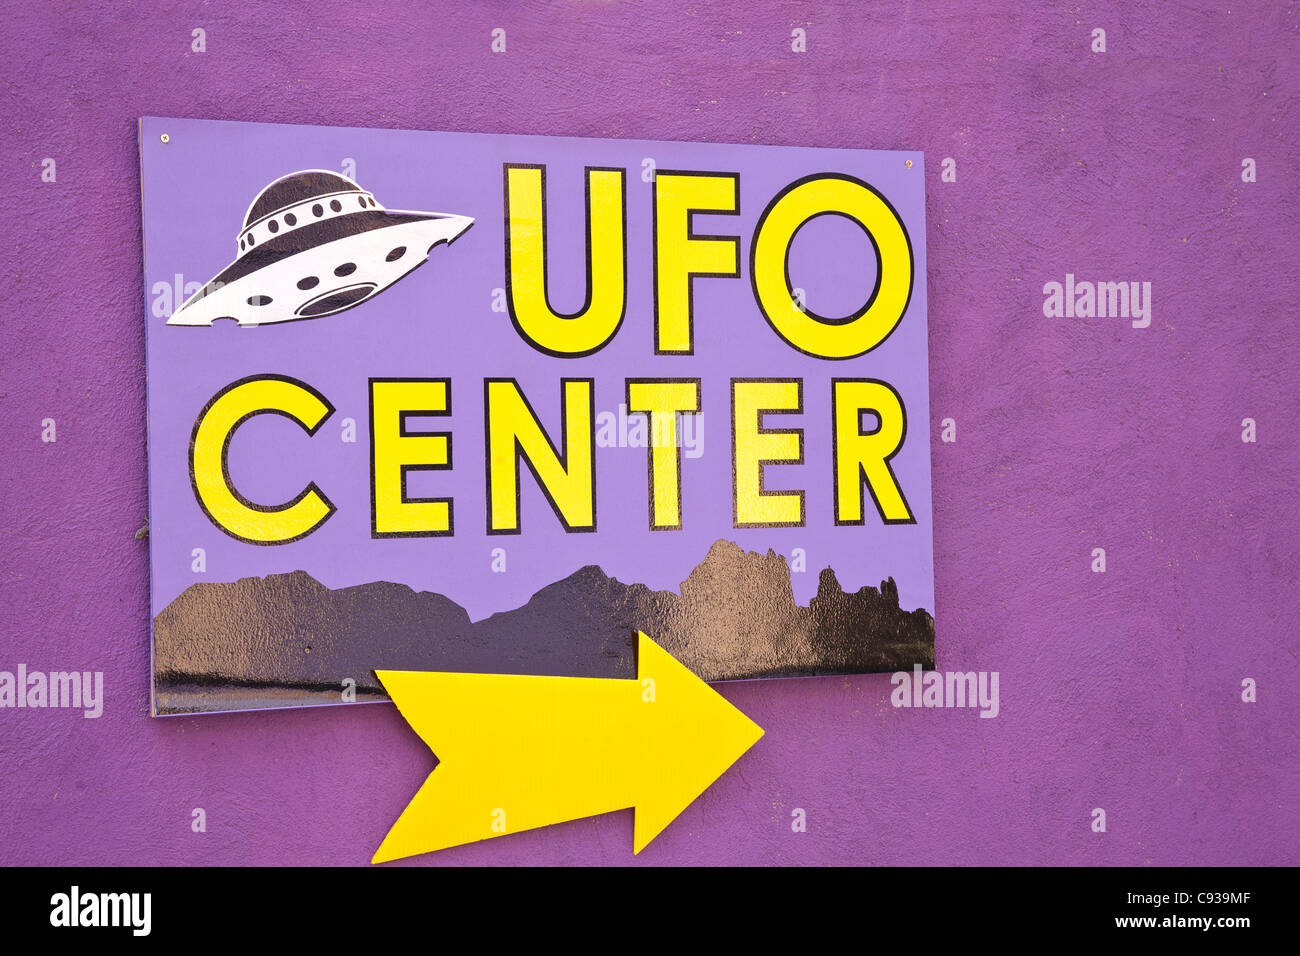 UFO centre Stock Photo